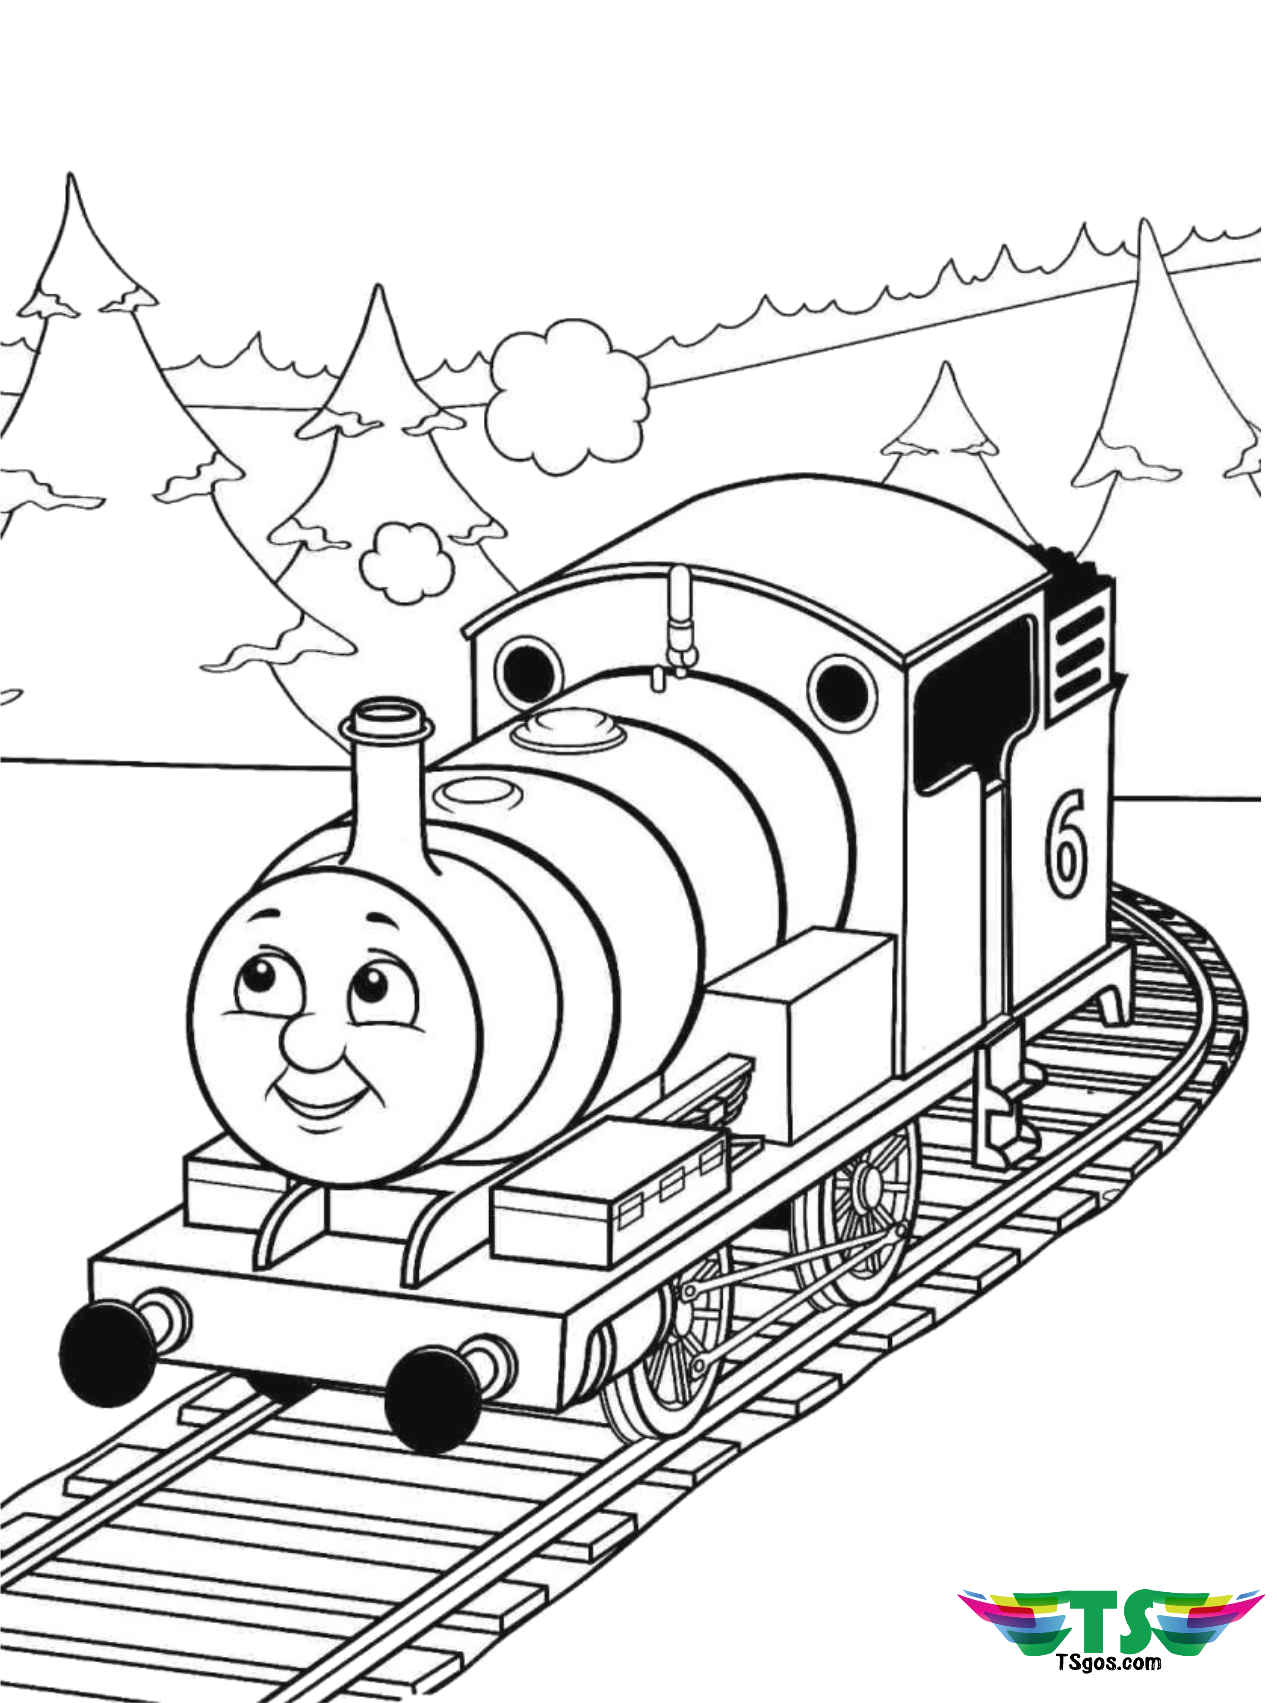 Thomas the tank engine train coloring page   TSgos.com   TSgos.com